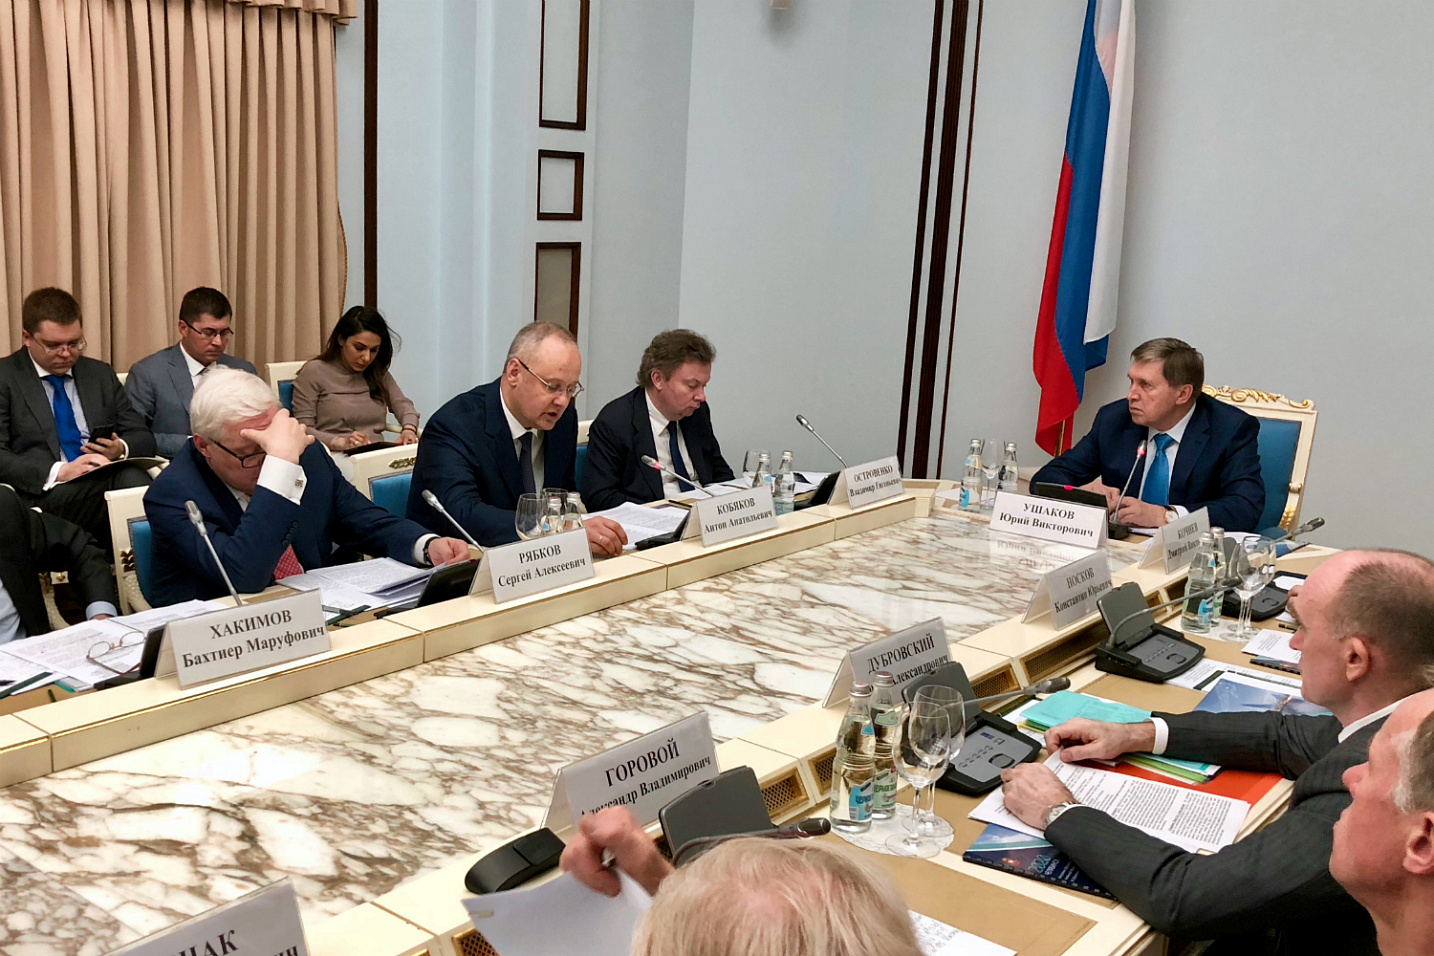 Состоялось первое заседание Оргкомитета по подготовке встречи лидеров ШОС и БРИКС в Челябинске в 2020 году